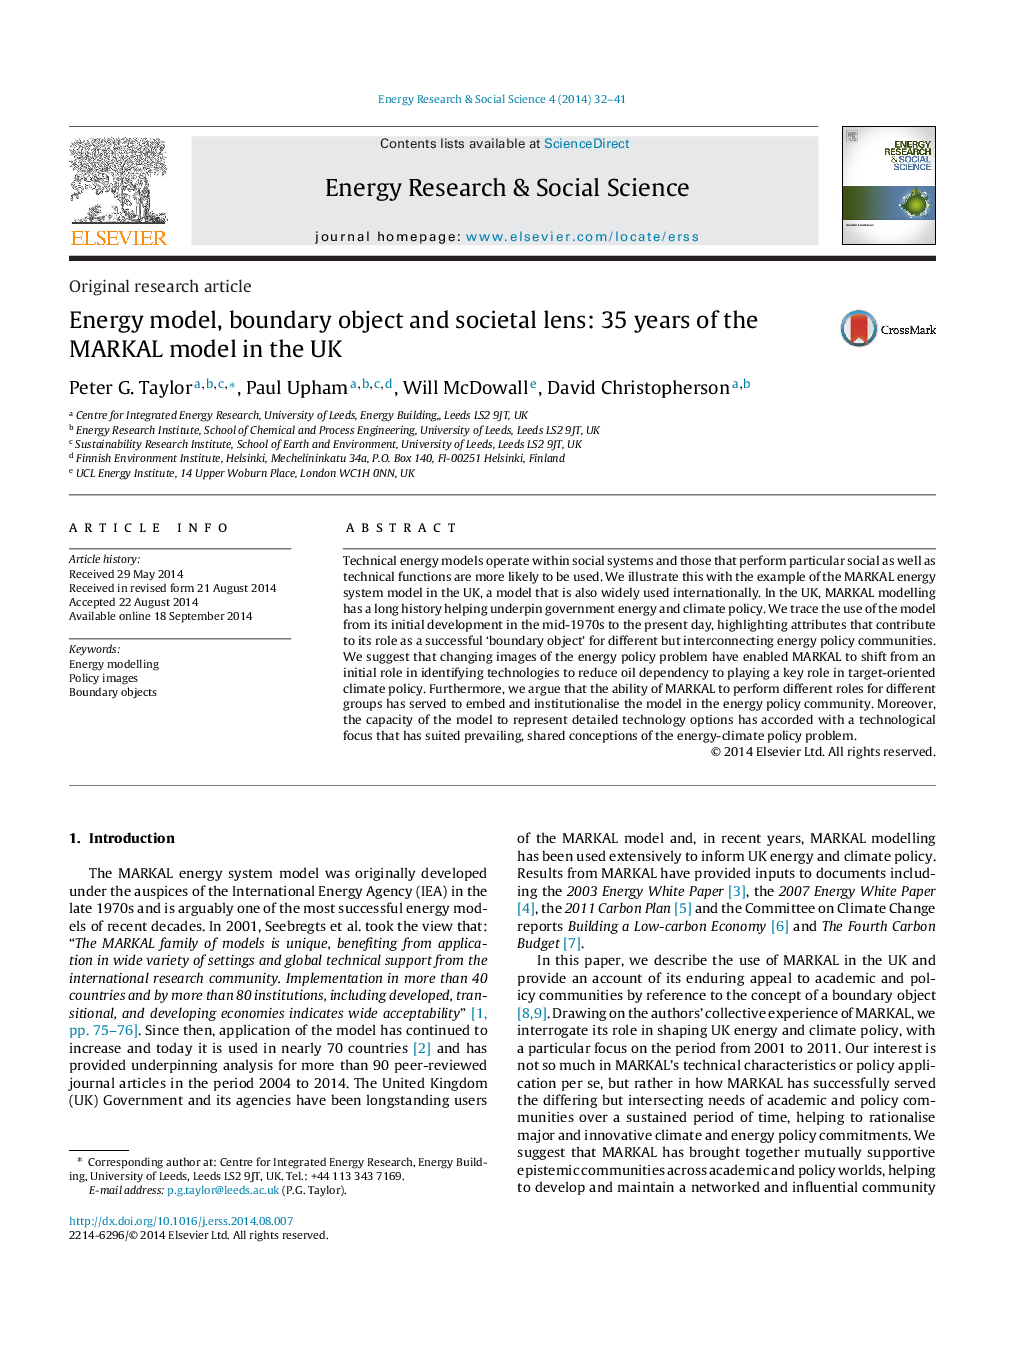 مدل انرژی، شی های مرزی و لنز اجتماعی: 35 سال مدل MARKAL در انگلستان